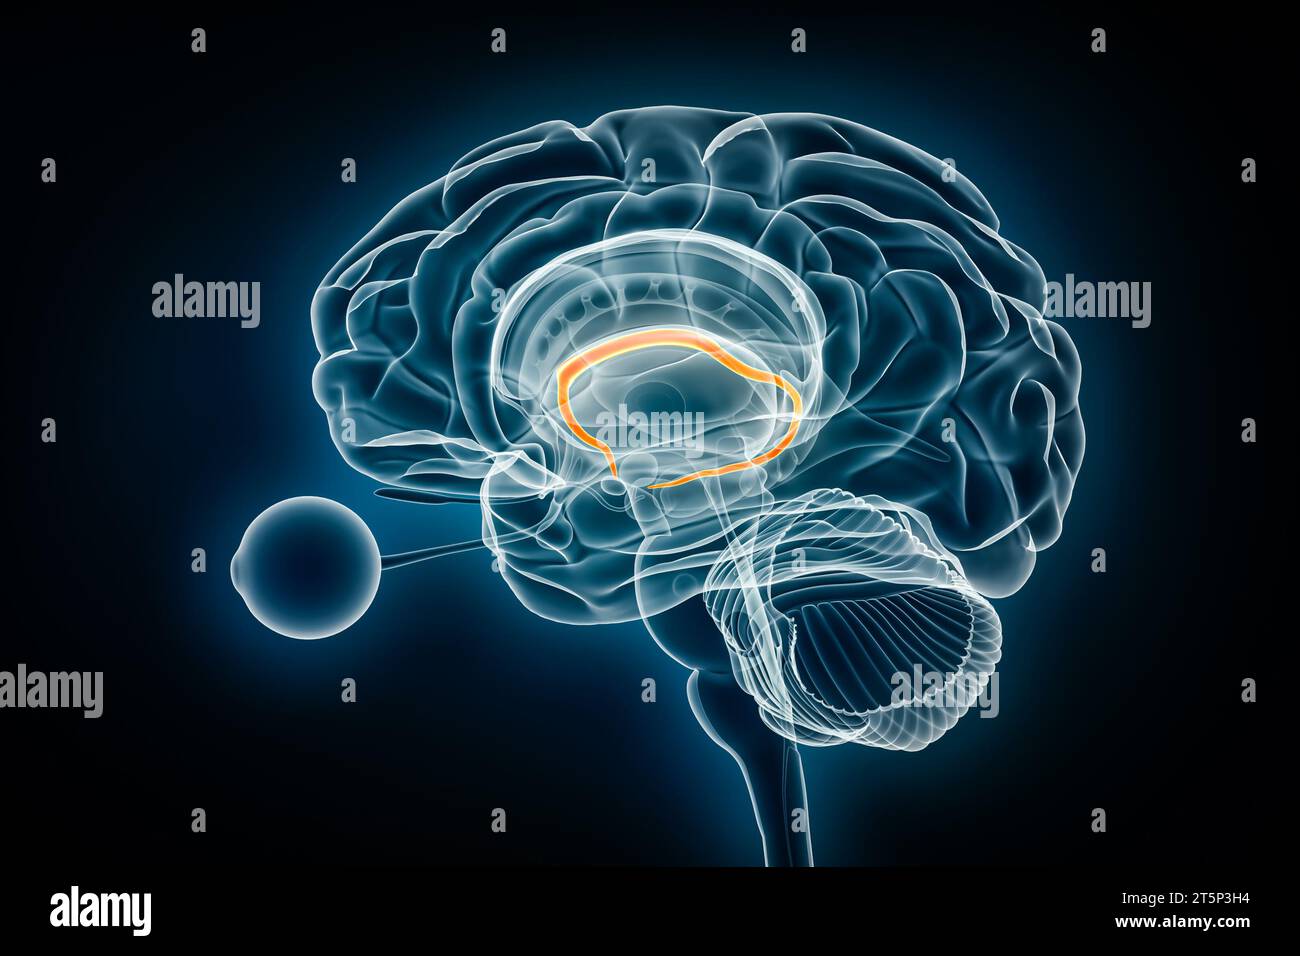 Fornix-Profil-Röntgenansicht 3D-Rendering-Illustration. Menschliches Gehirn und limbisches System Anatomie, Medizin, Gesundheitswesen, Biologie, Wissenschaft, Neurowissenschaft, Neuro Stockfoto